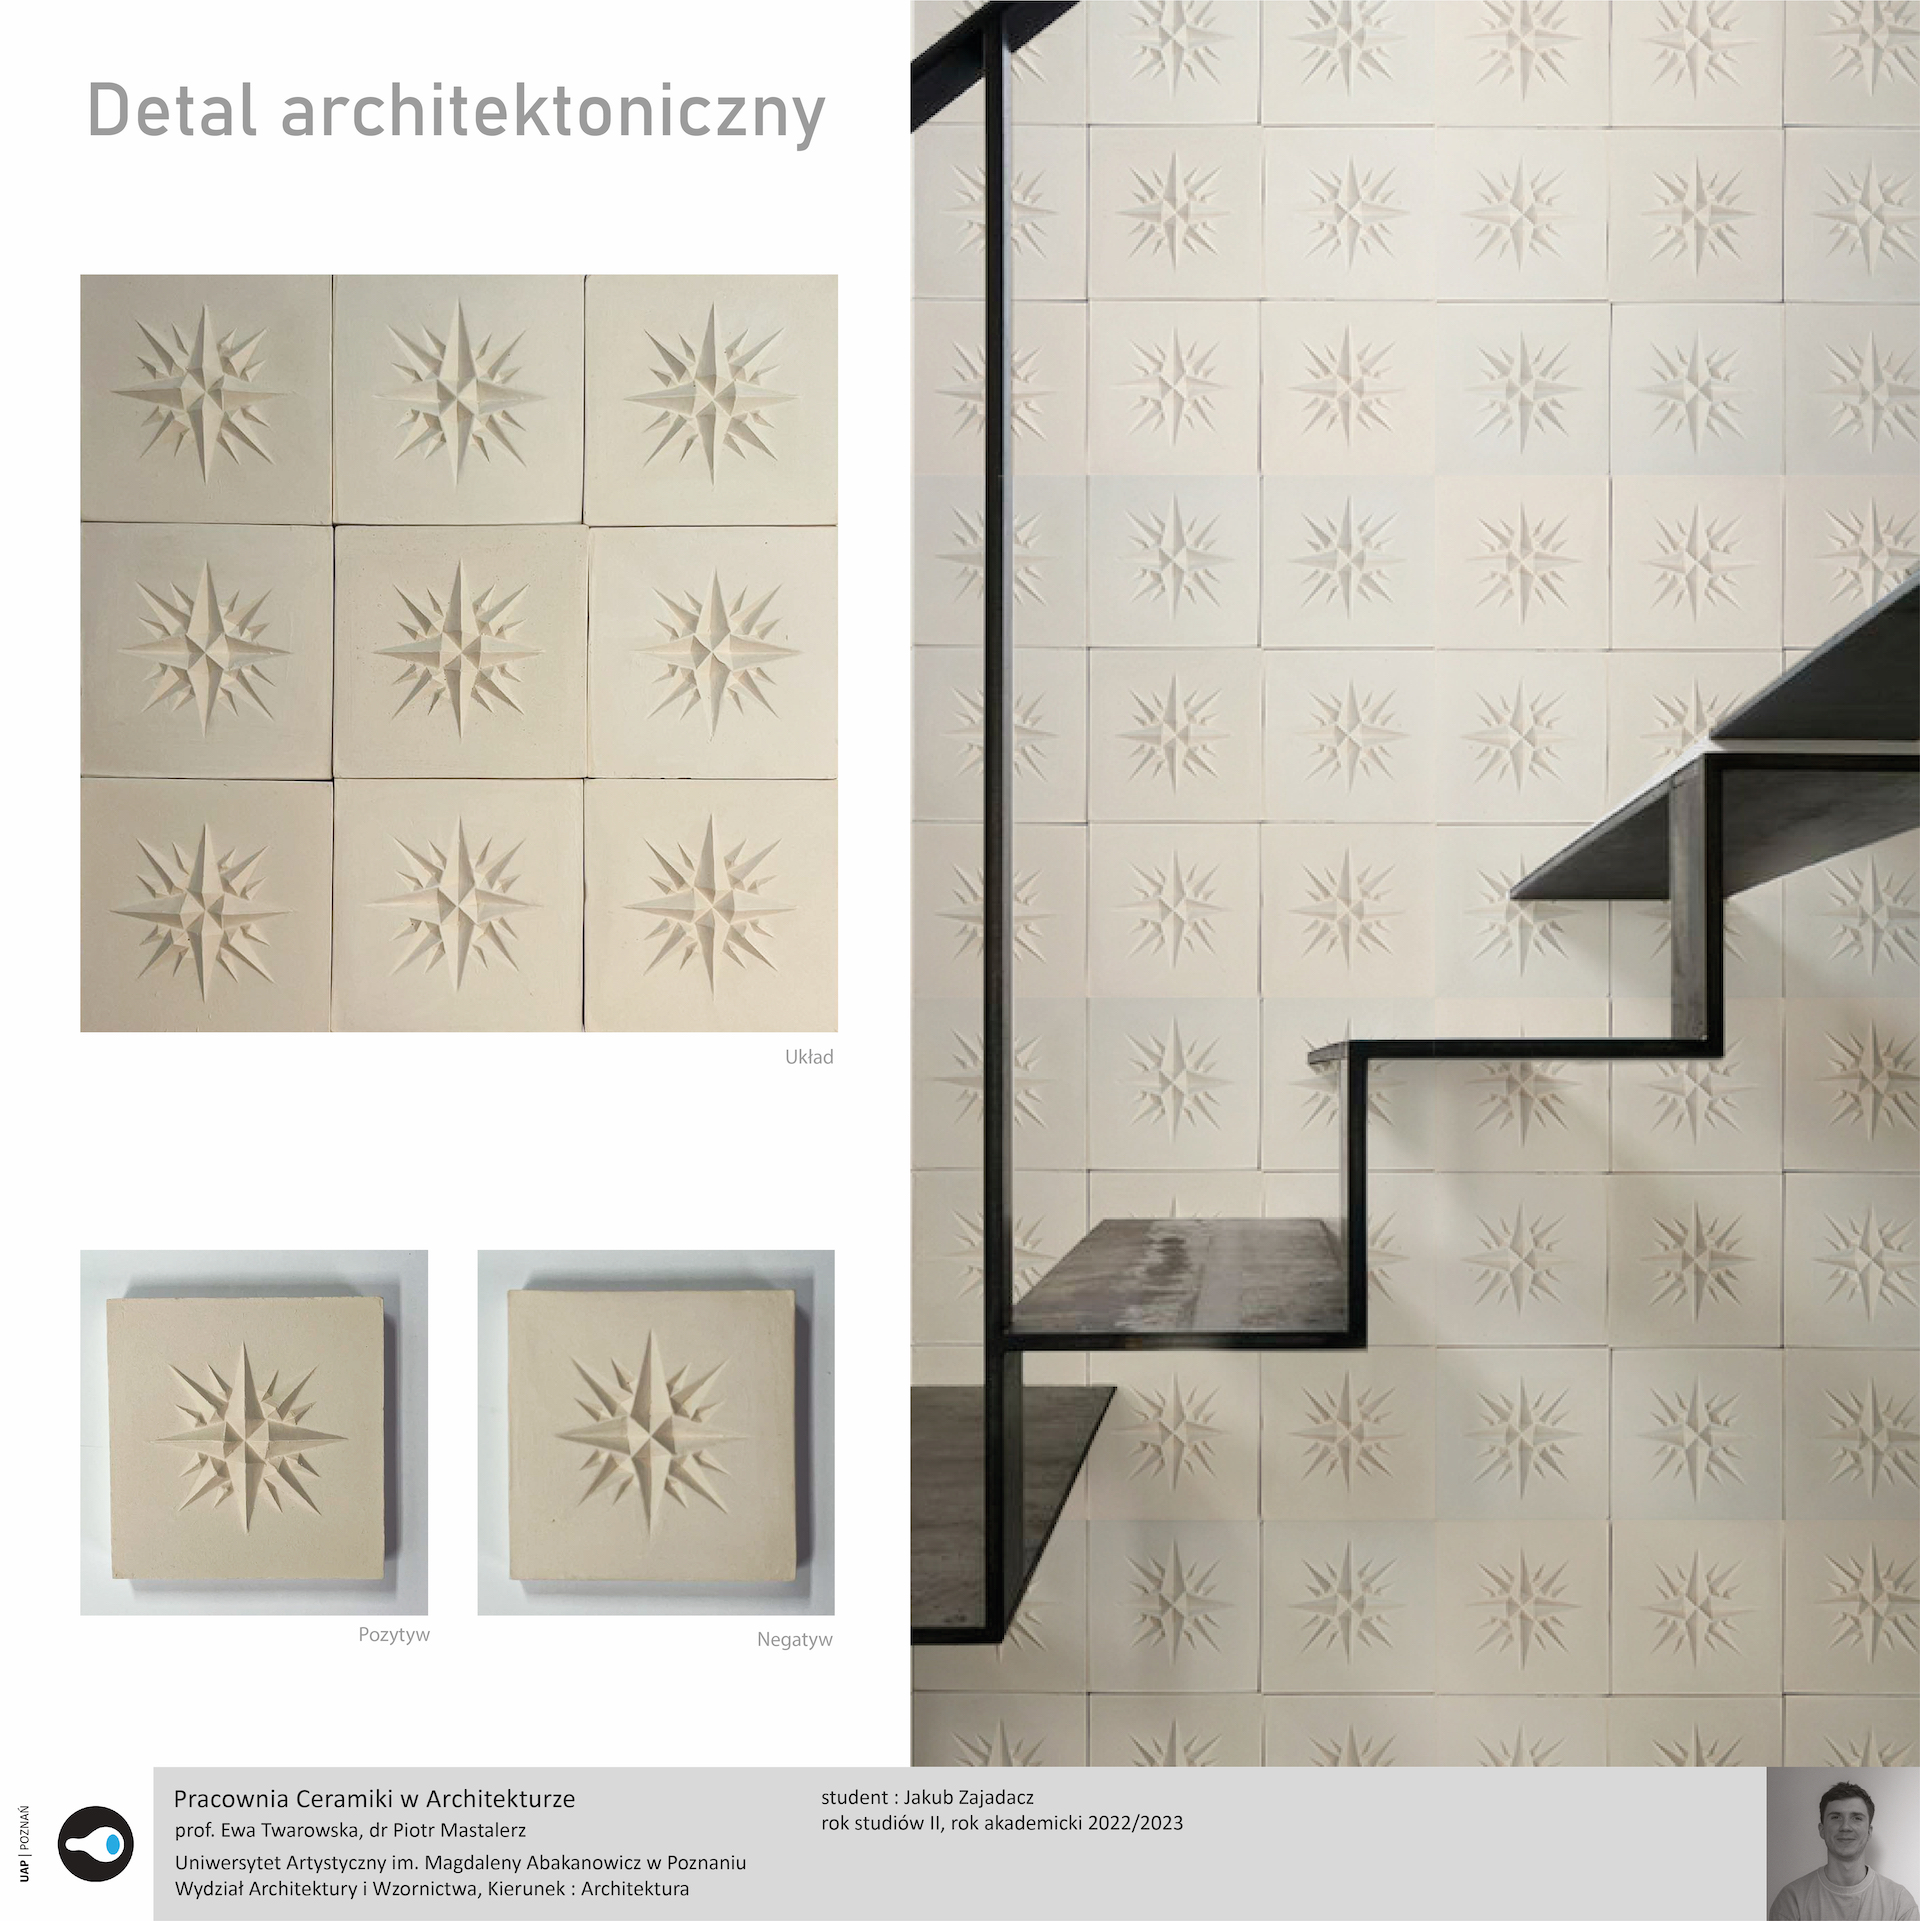 Opis alternatywny: Detal architektoniczny – Plansza przedstawia wizualizację z detalem architektonicznym. Wizualizacja prezentuje całą ścianę z detalami oraz schody. Dużą rolę odgrywa gra światłocieni.